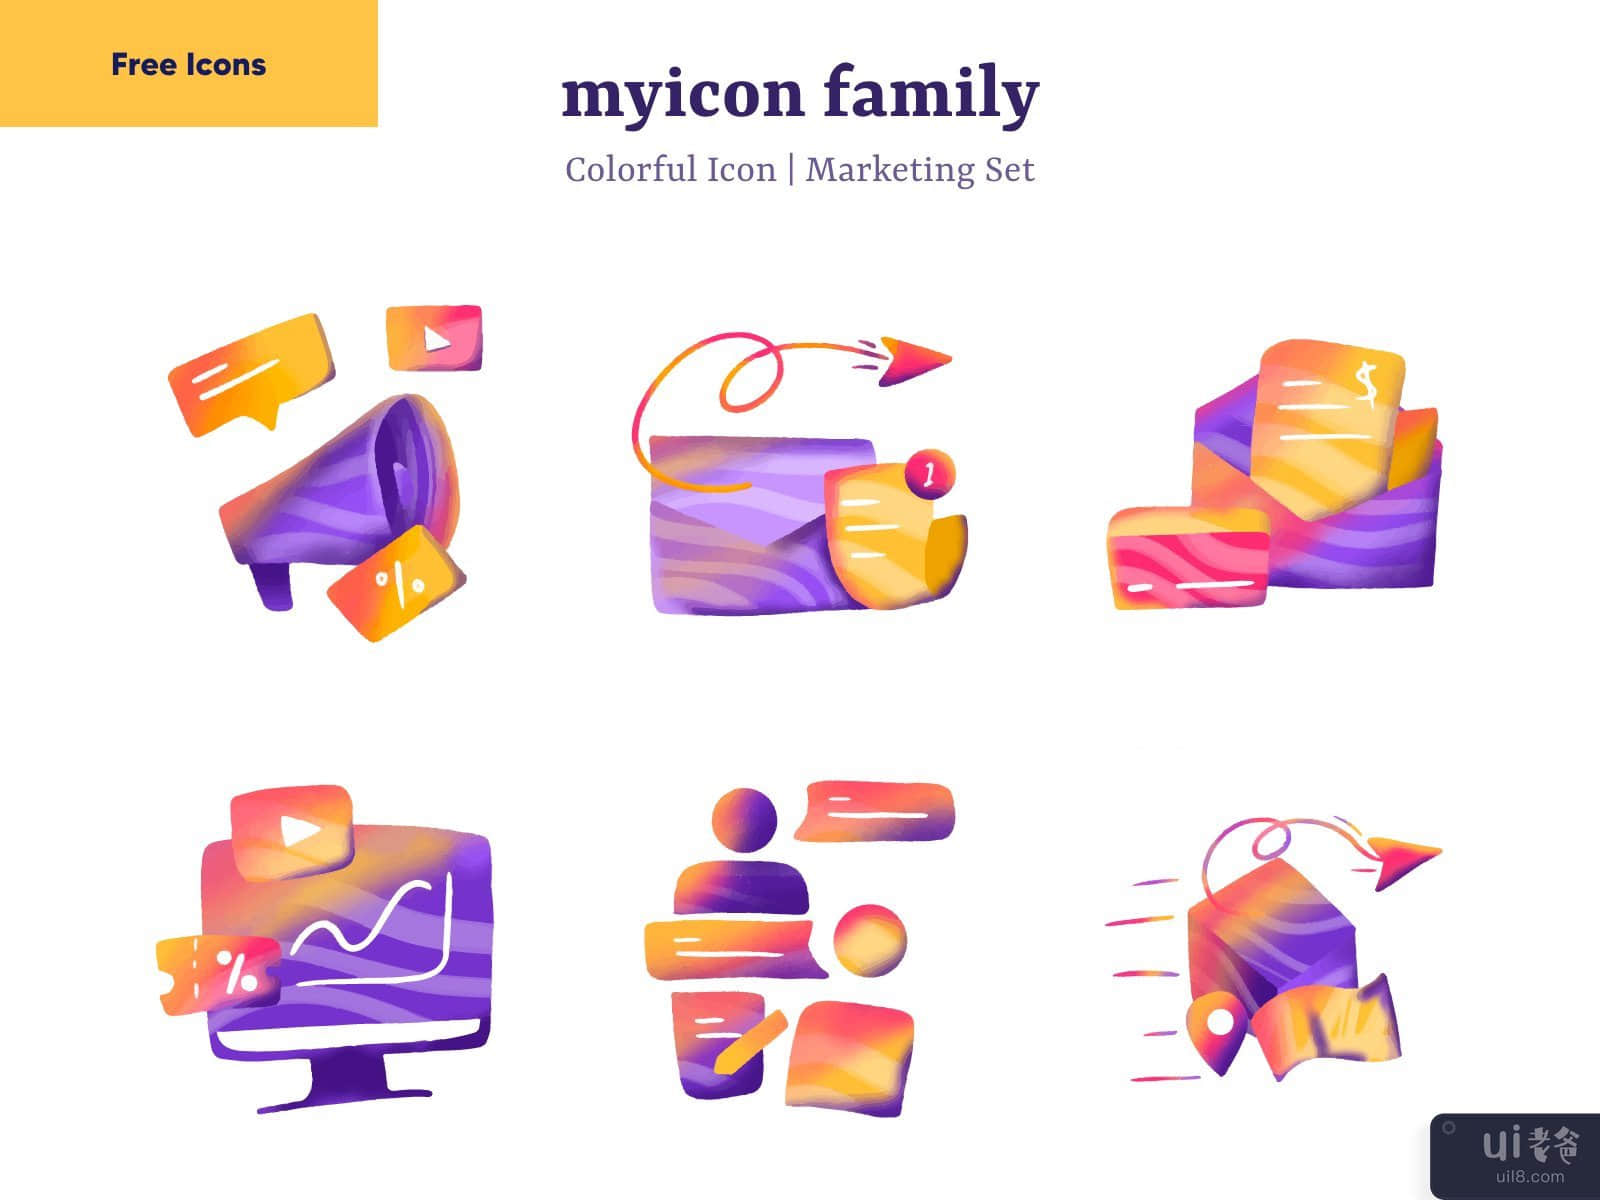 Marketing Colorful Icon | Myicon